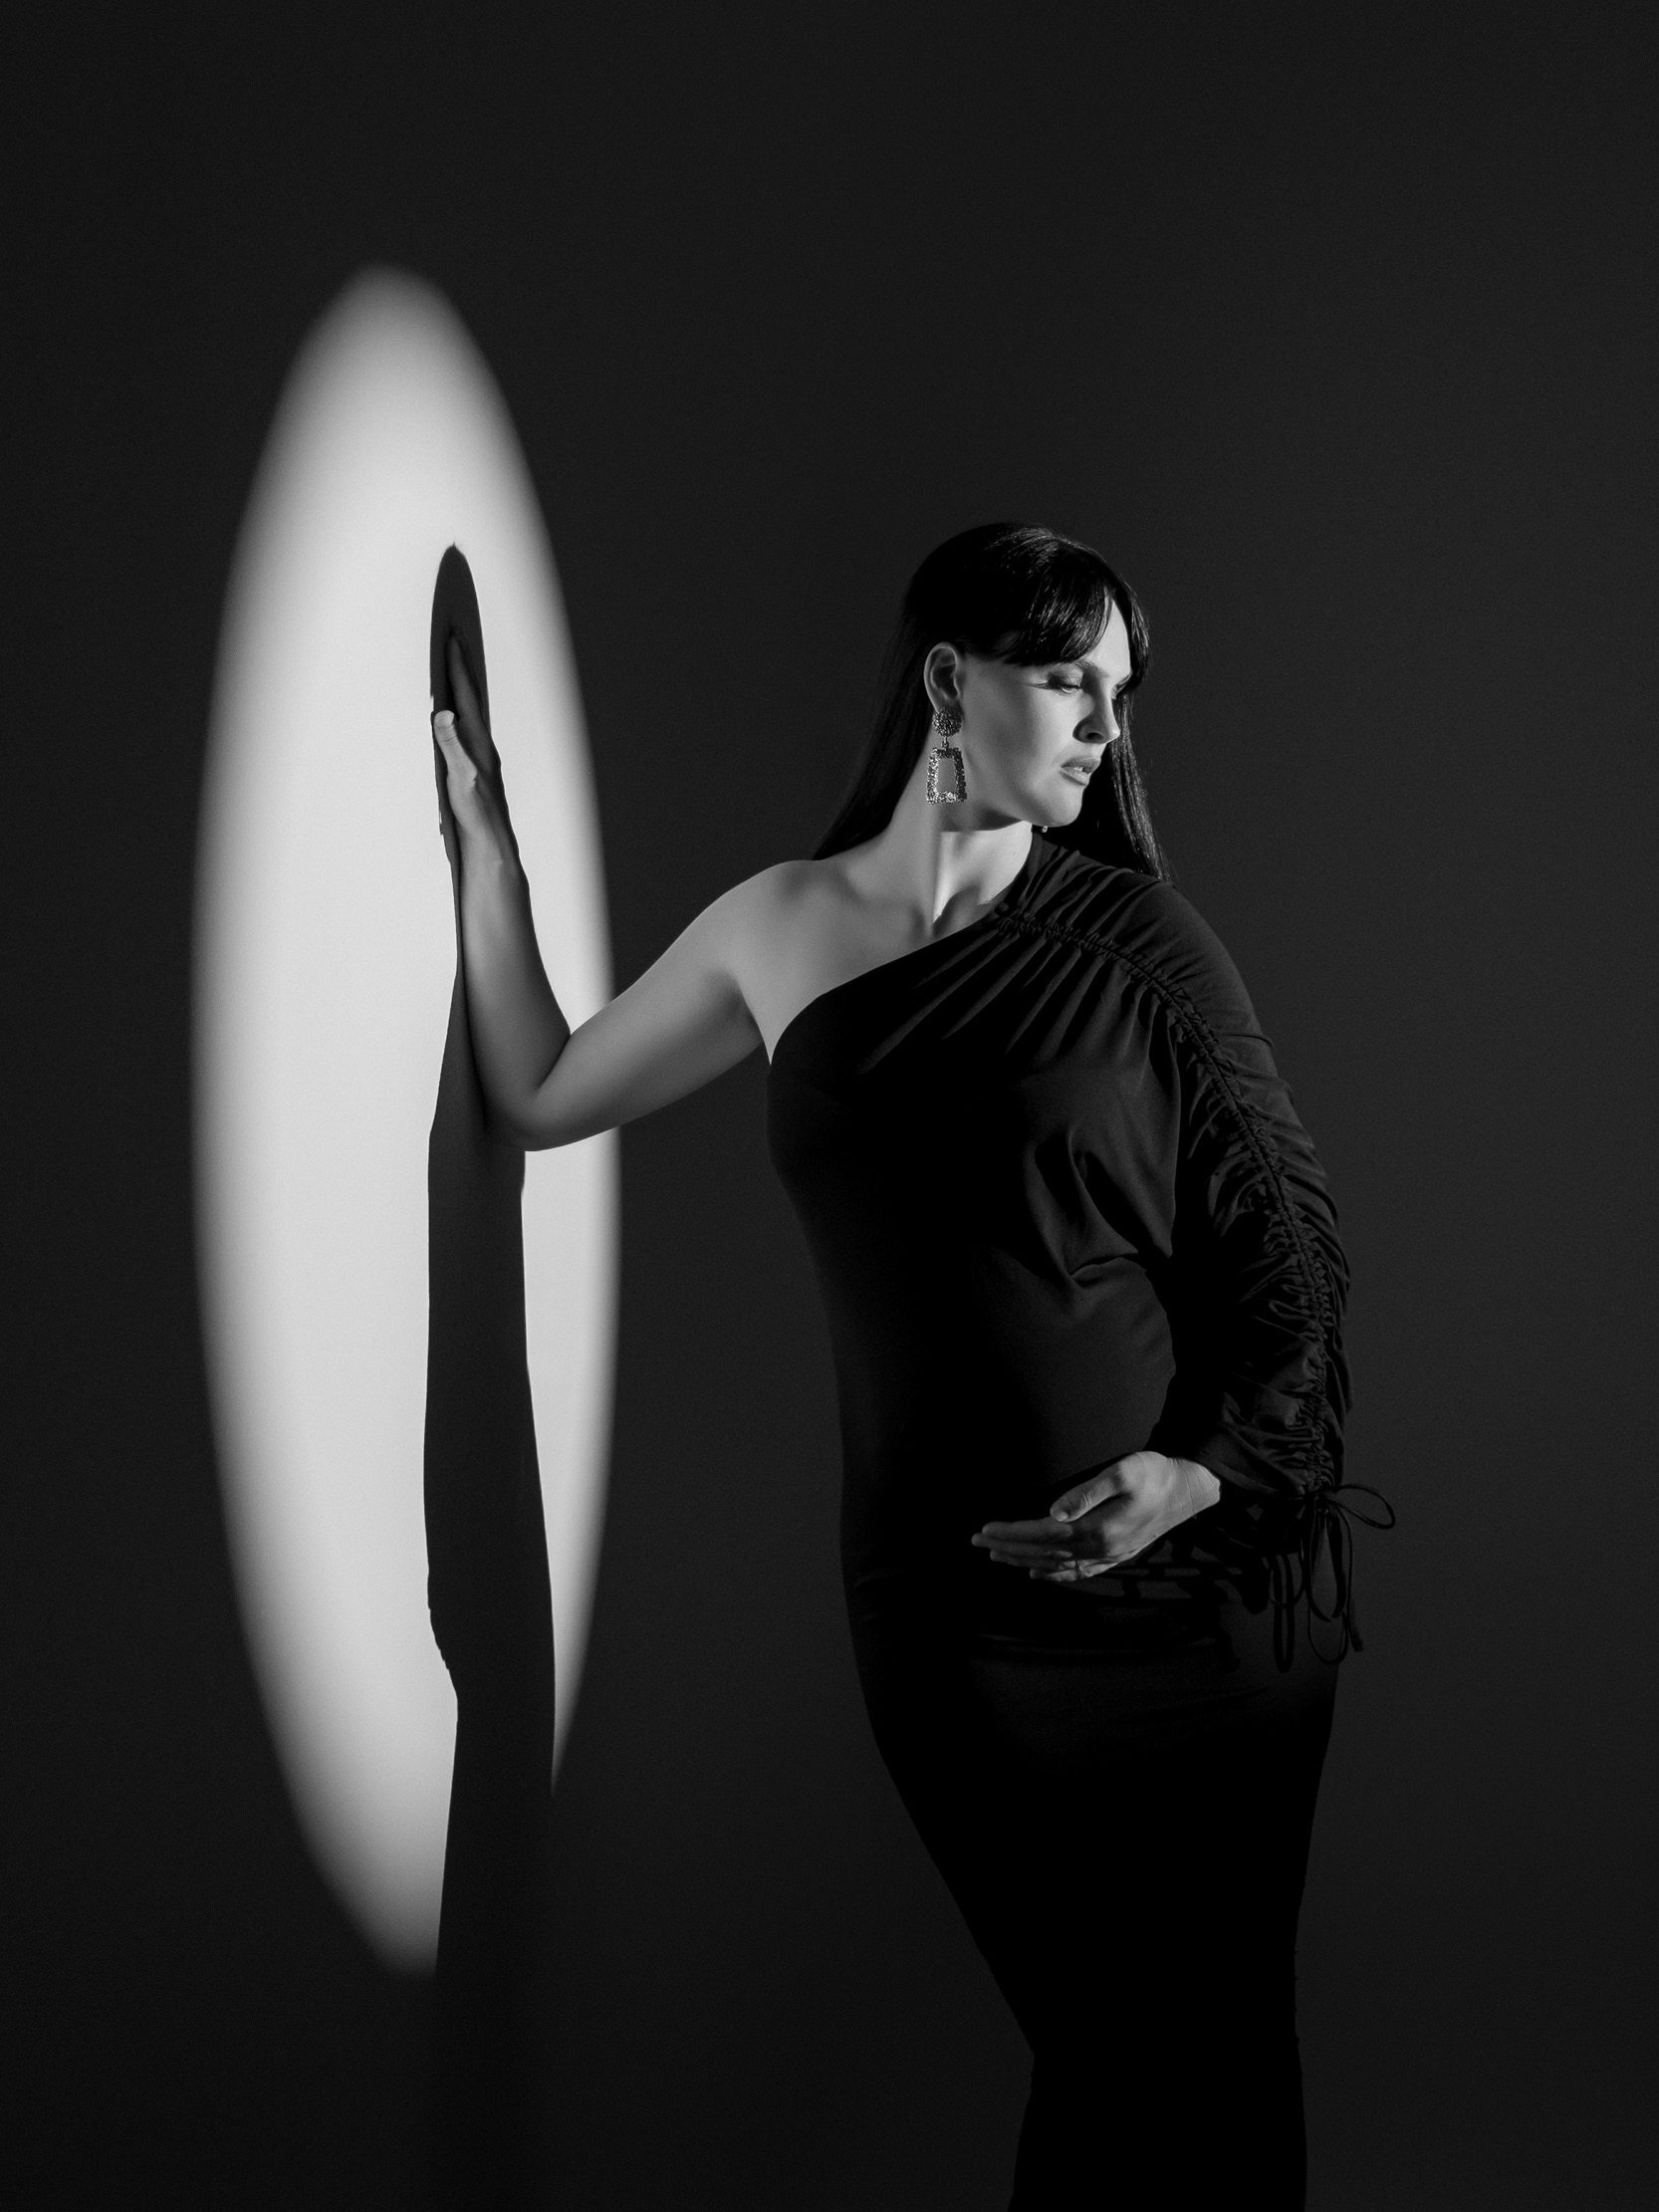 Stilno fotografiranje nosečnice v črni obleki v foto studiu